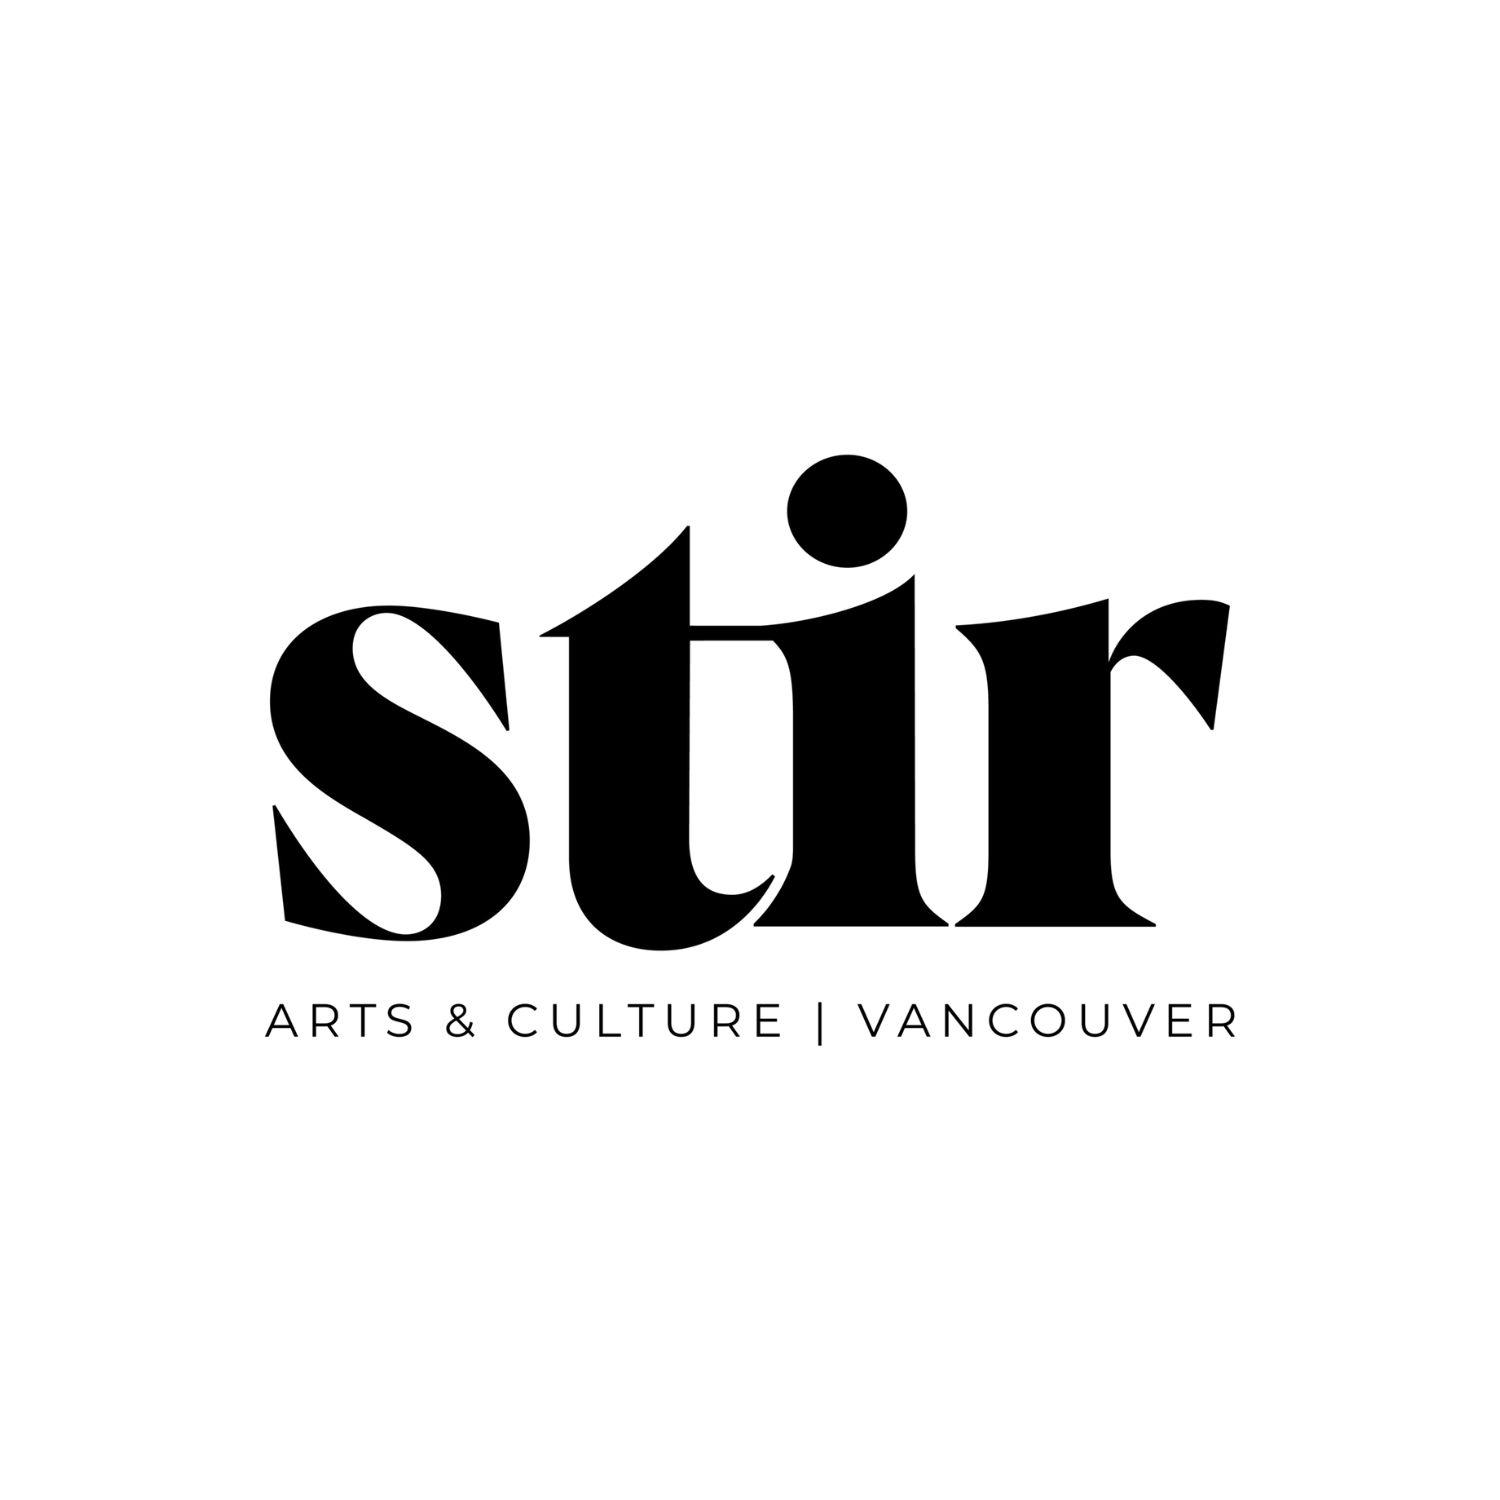 Stir Arts & Culture | Vancouver